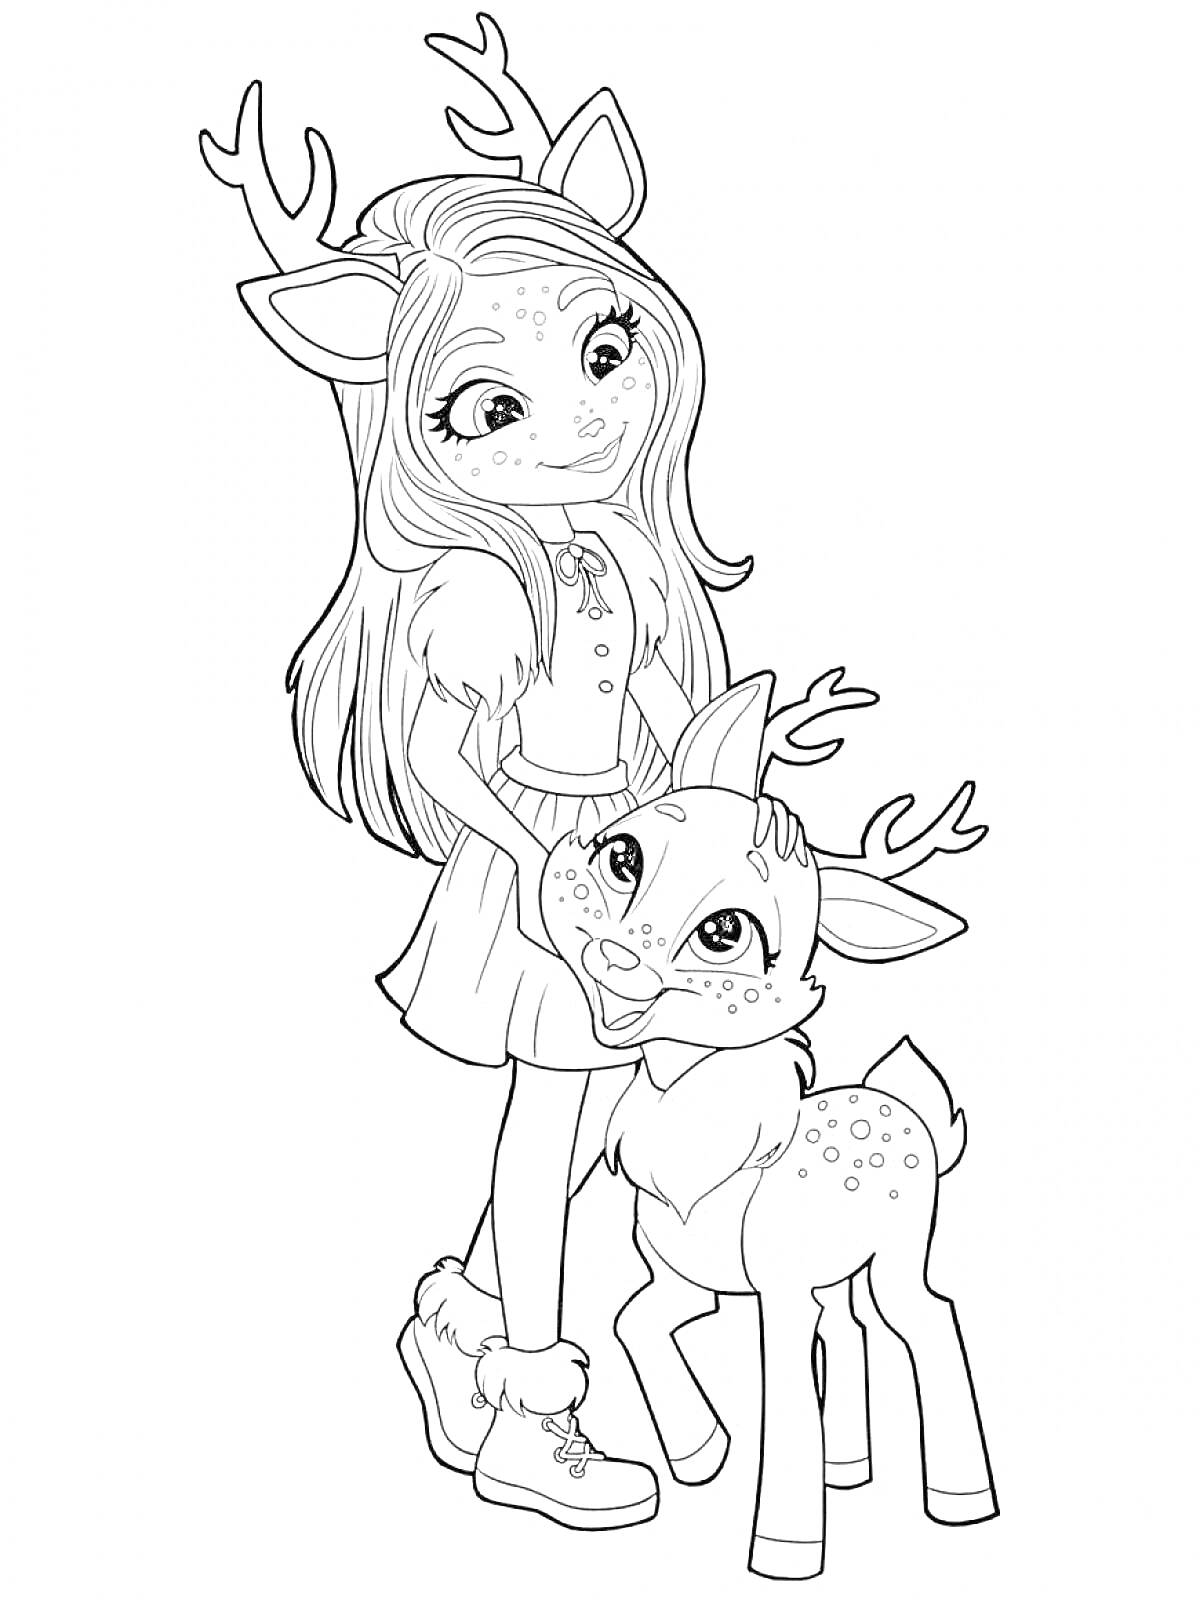 Раскраска Девочка-Энчантималс с ушками и рожками, в платье и обуви, держащая олененка с рожками